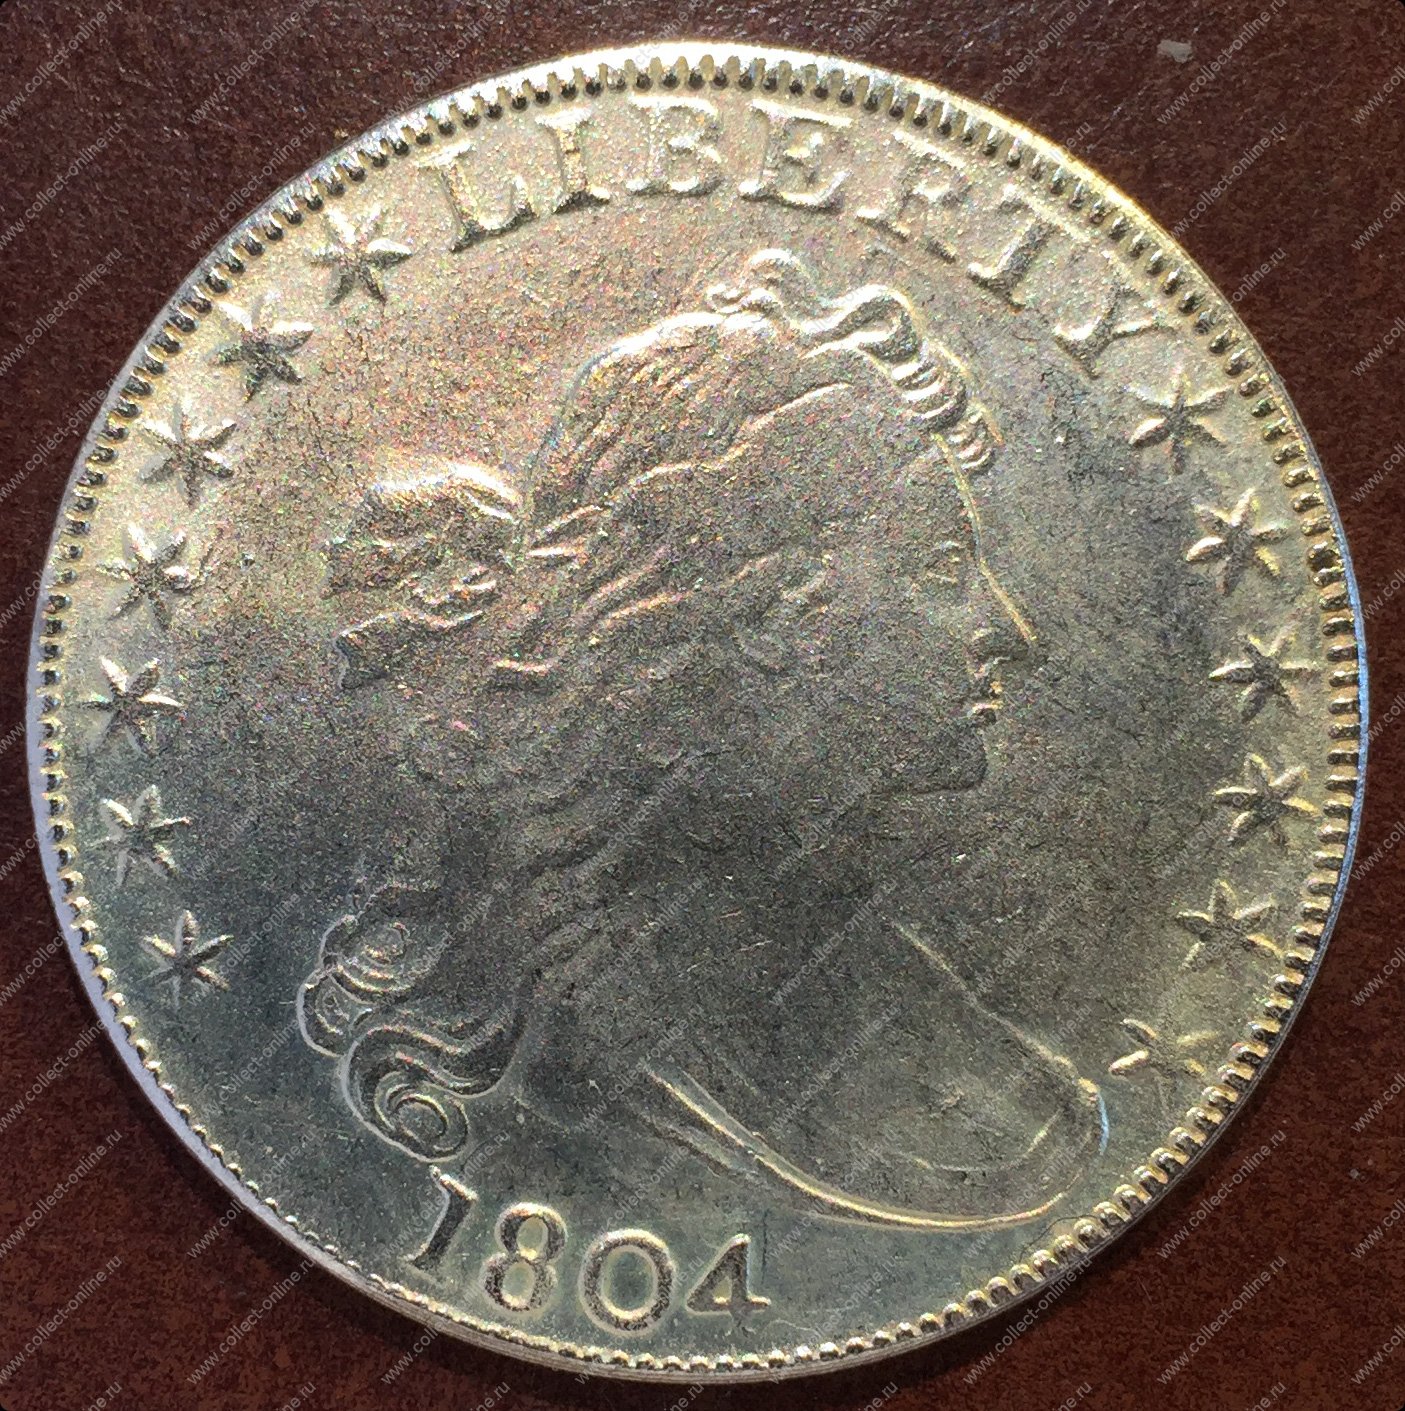 32 доллара в рублях на сегодня. 1/2 Цента 1804 США. Доллар 32,62. 32 Доллара. Монета США 1804г цена на сегодня оригинал.